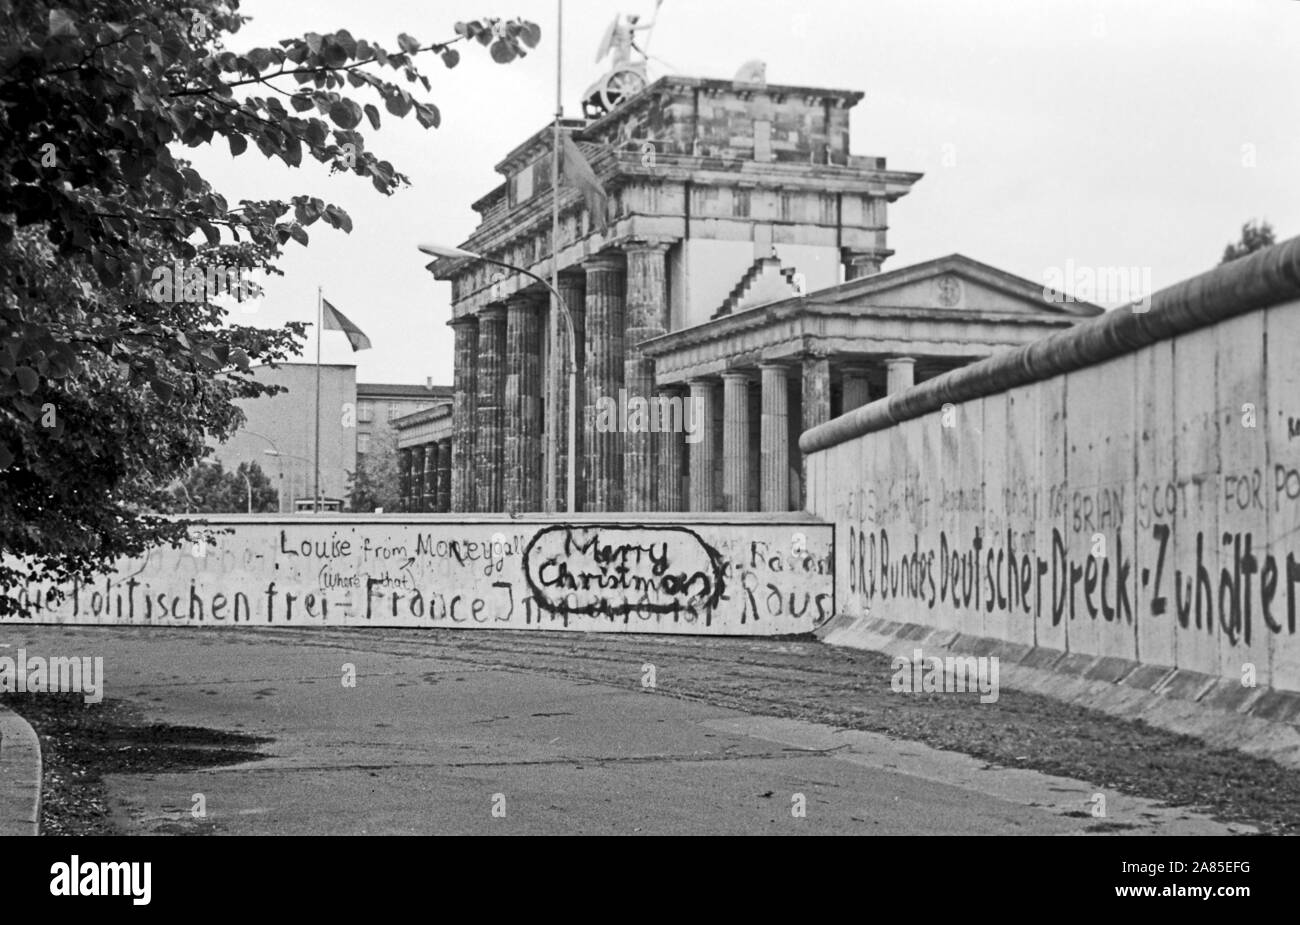 Weihnachtswünsche aufgesprüht in die Mauer in Berlin am Brandenburger Tor, Deutschland 1984. Besinnliche Weihnachten und sprühte auf die Berliner Mauer in der Nähe von Brandenburger Tor, Deutschland 1984. Stockfoto